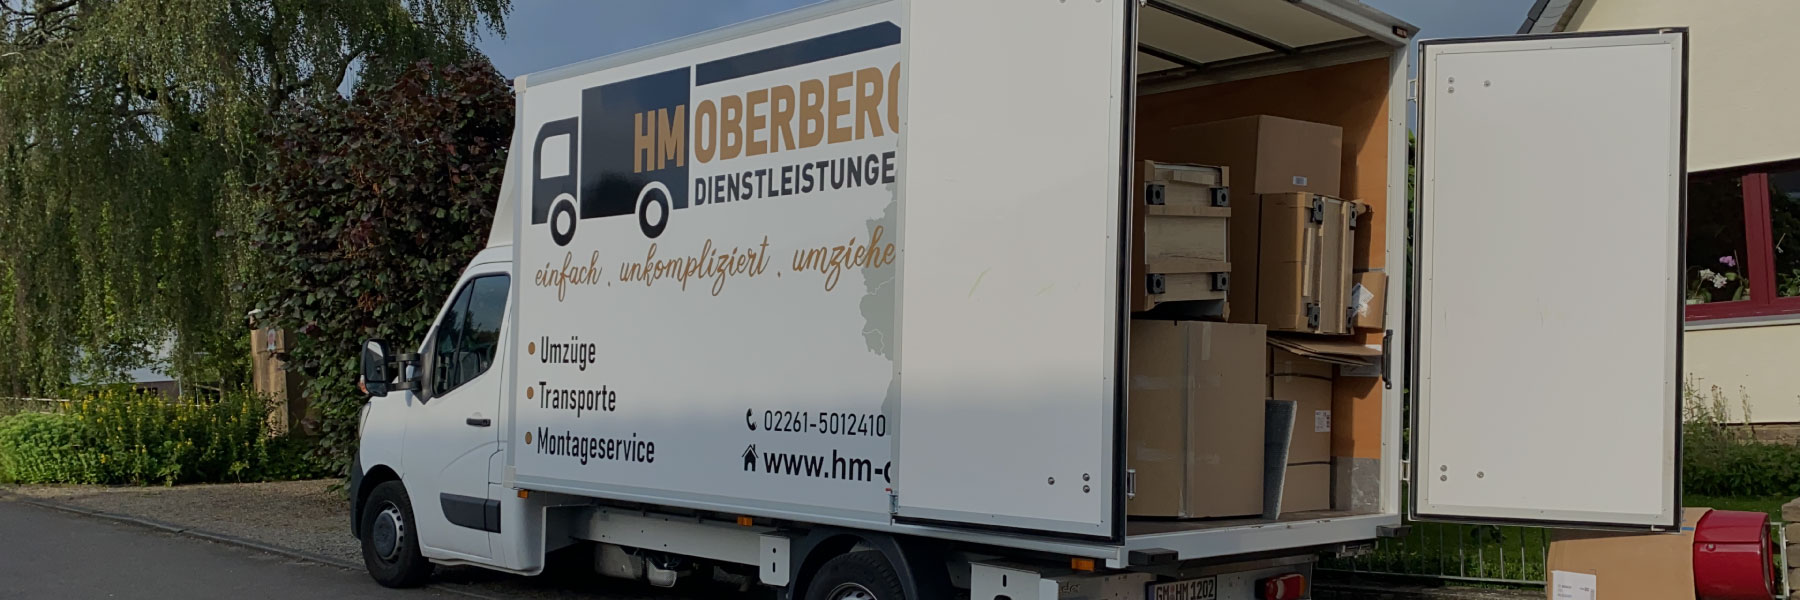 HM Oberberg Dienstleistungen in Gummersbach